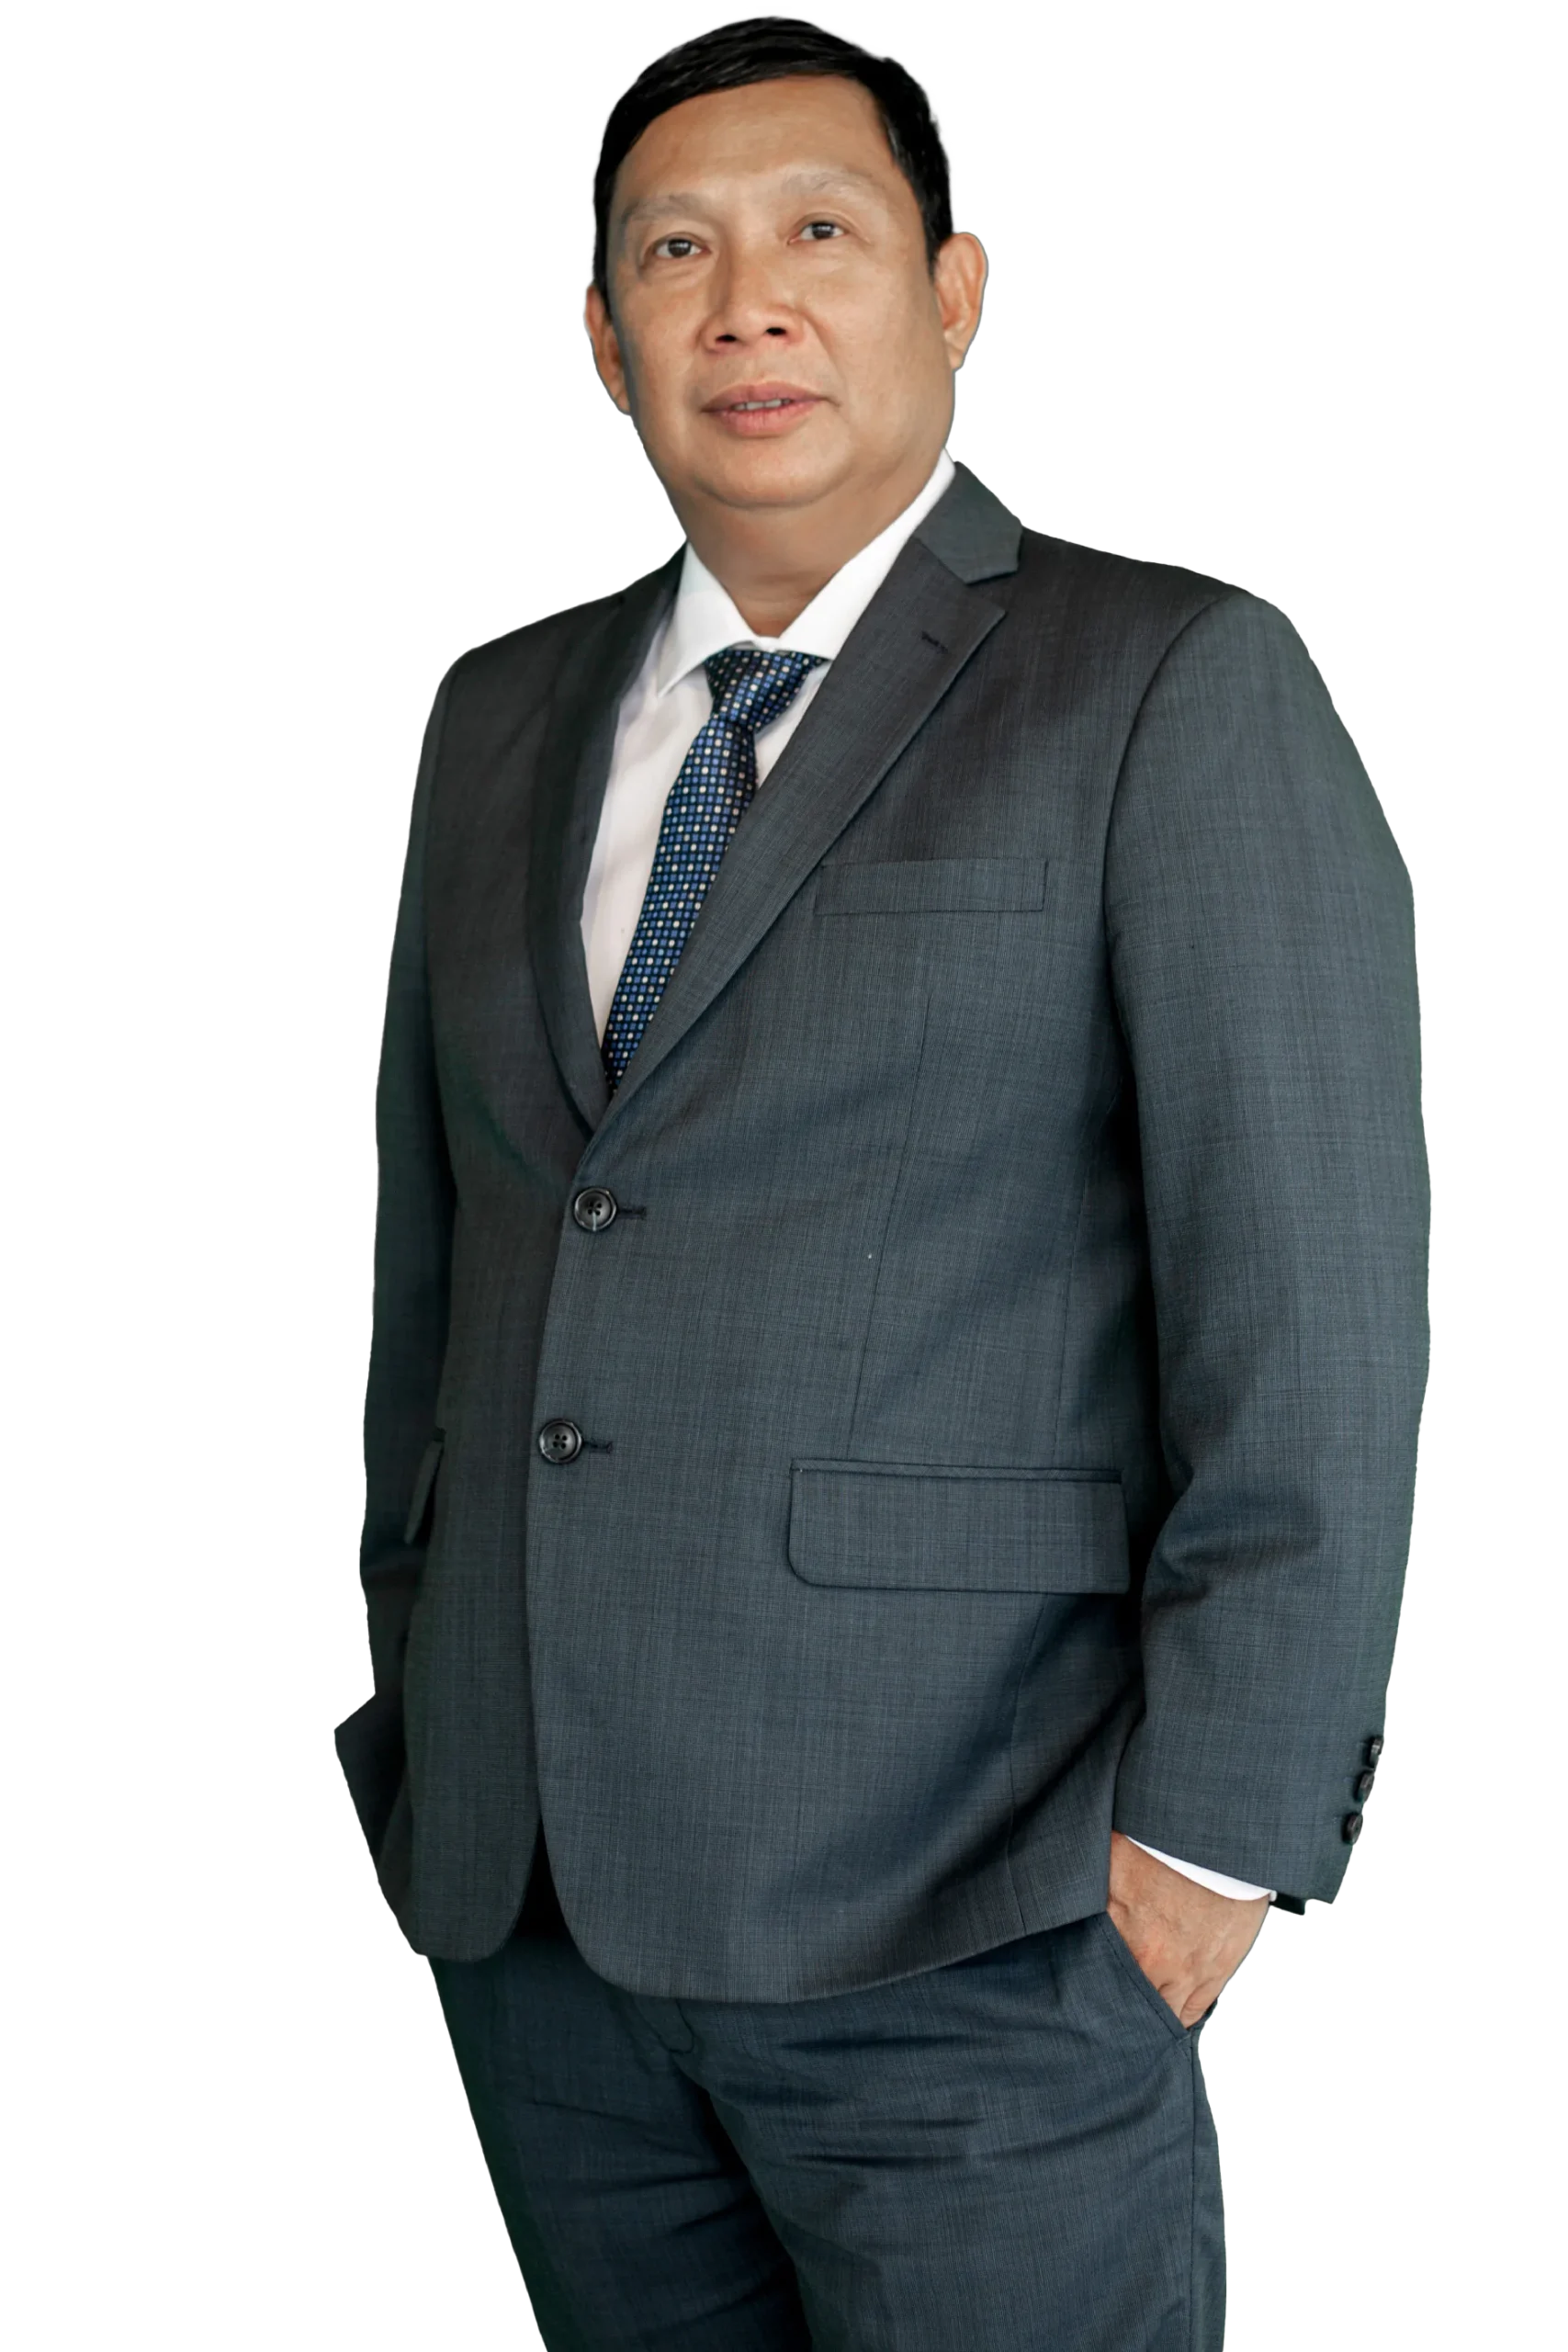 Mr. Huynh Van Cuong